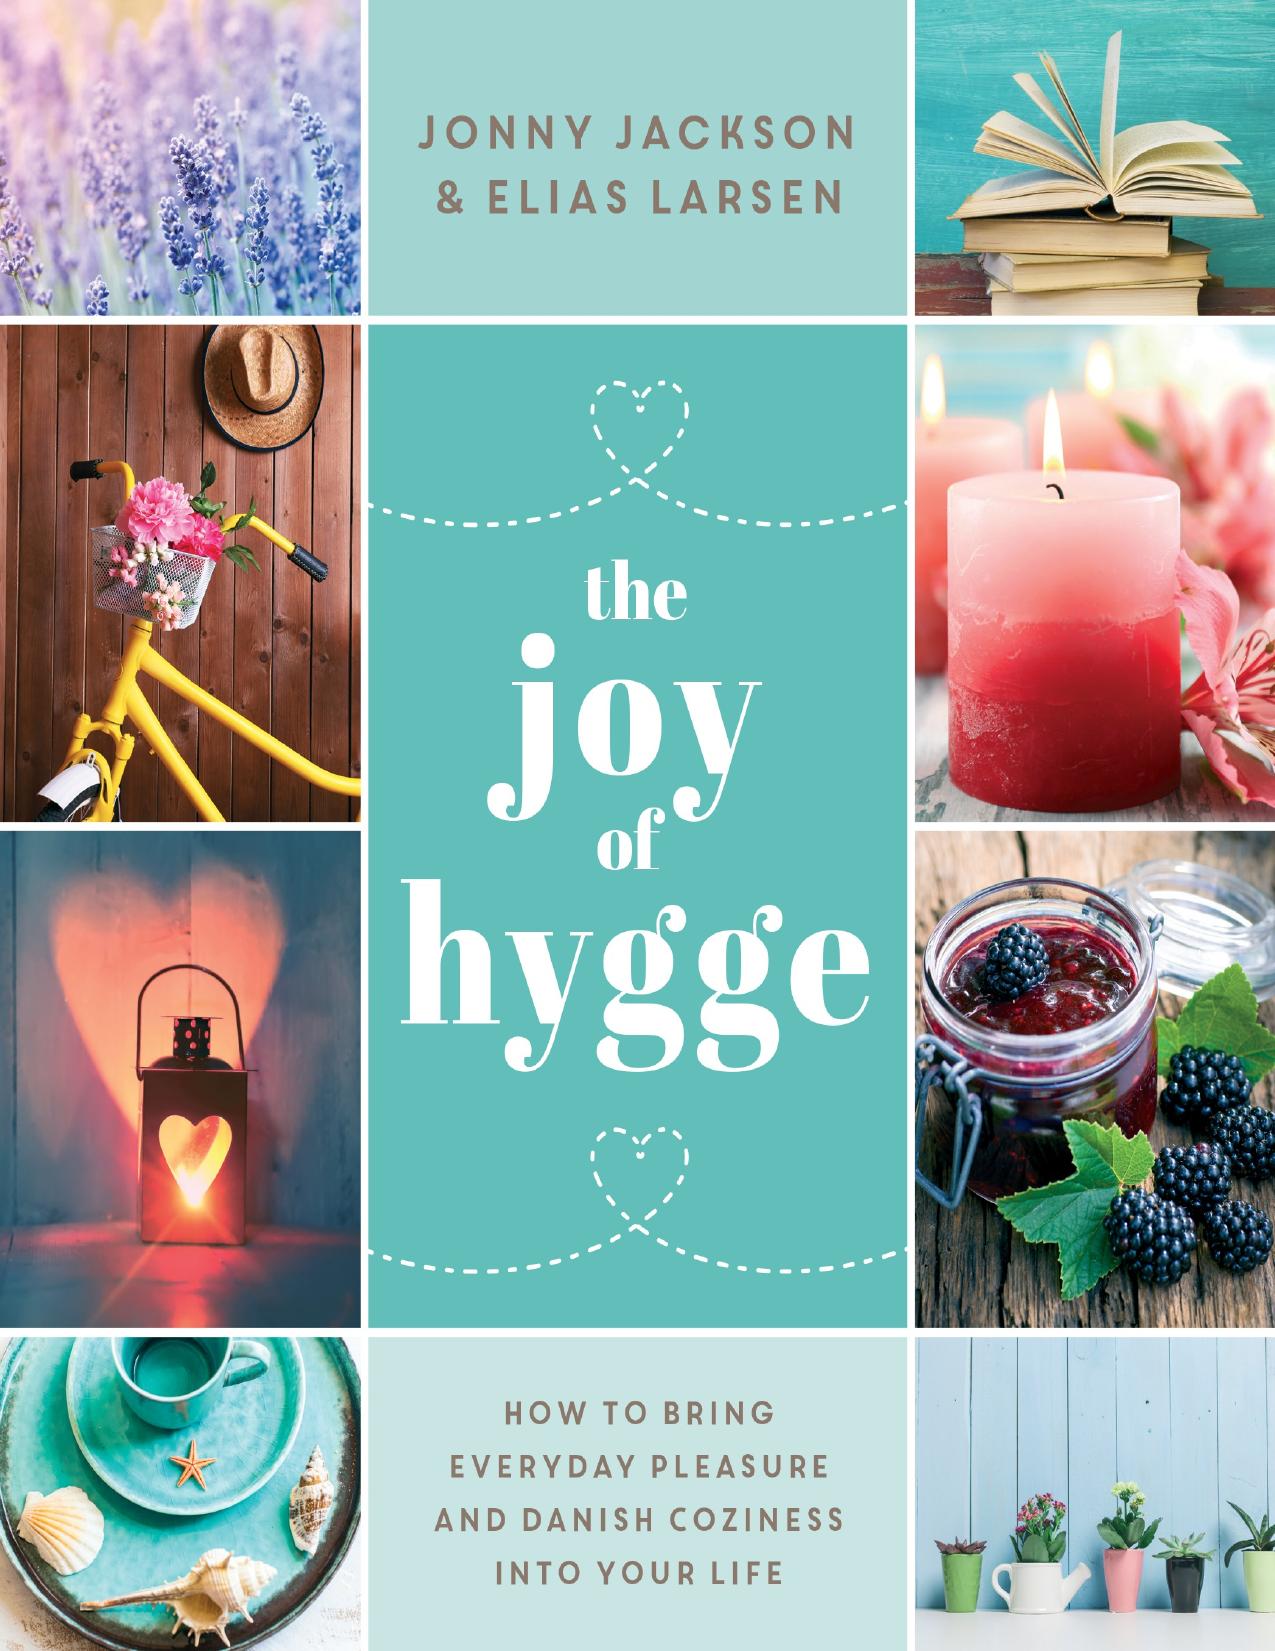 The Joy of Hygge by Jonny Jackson